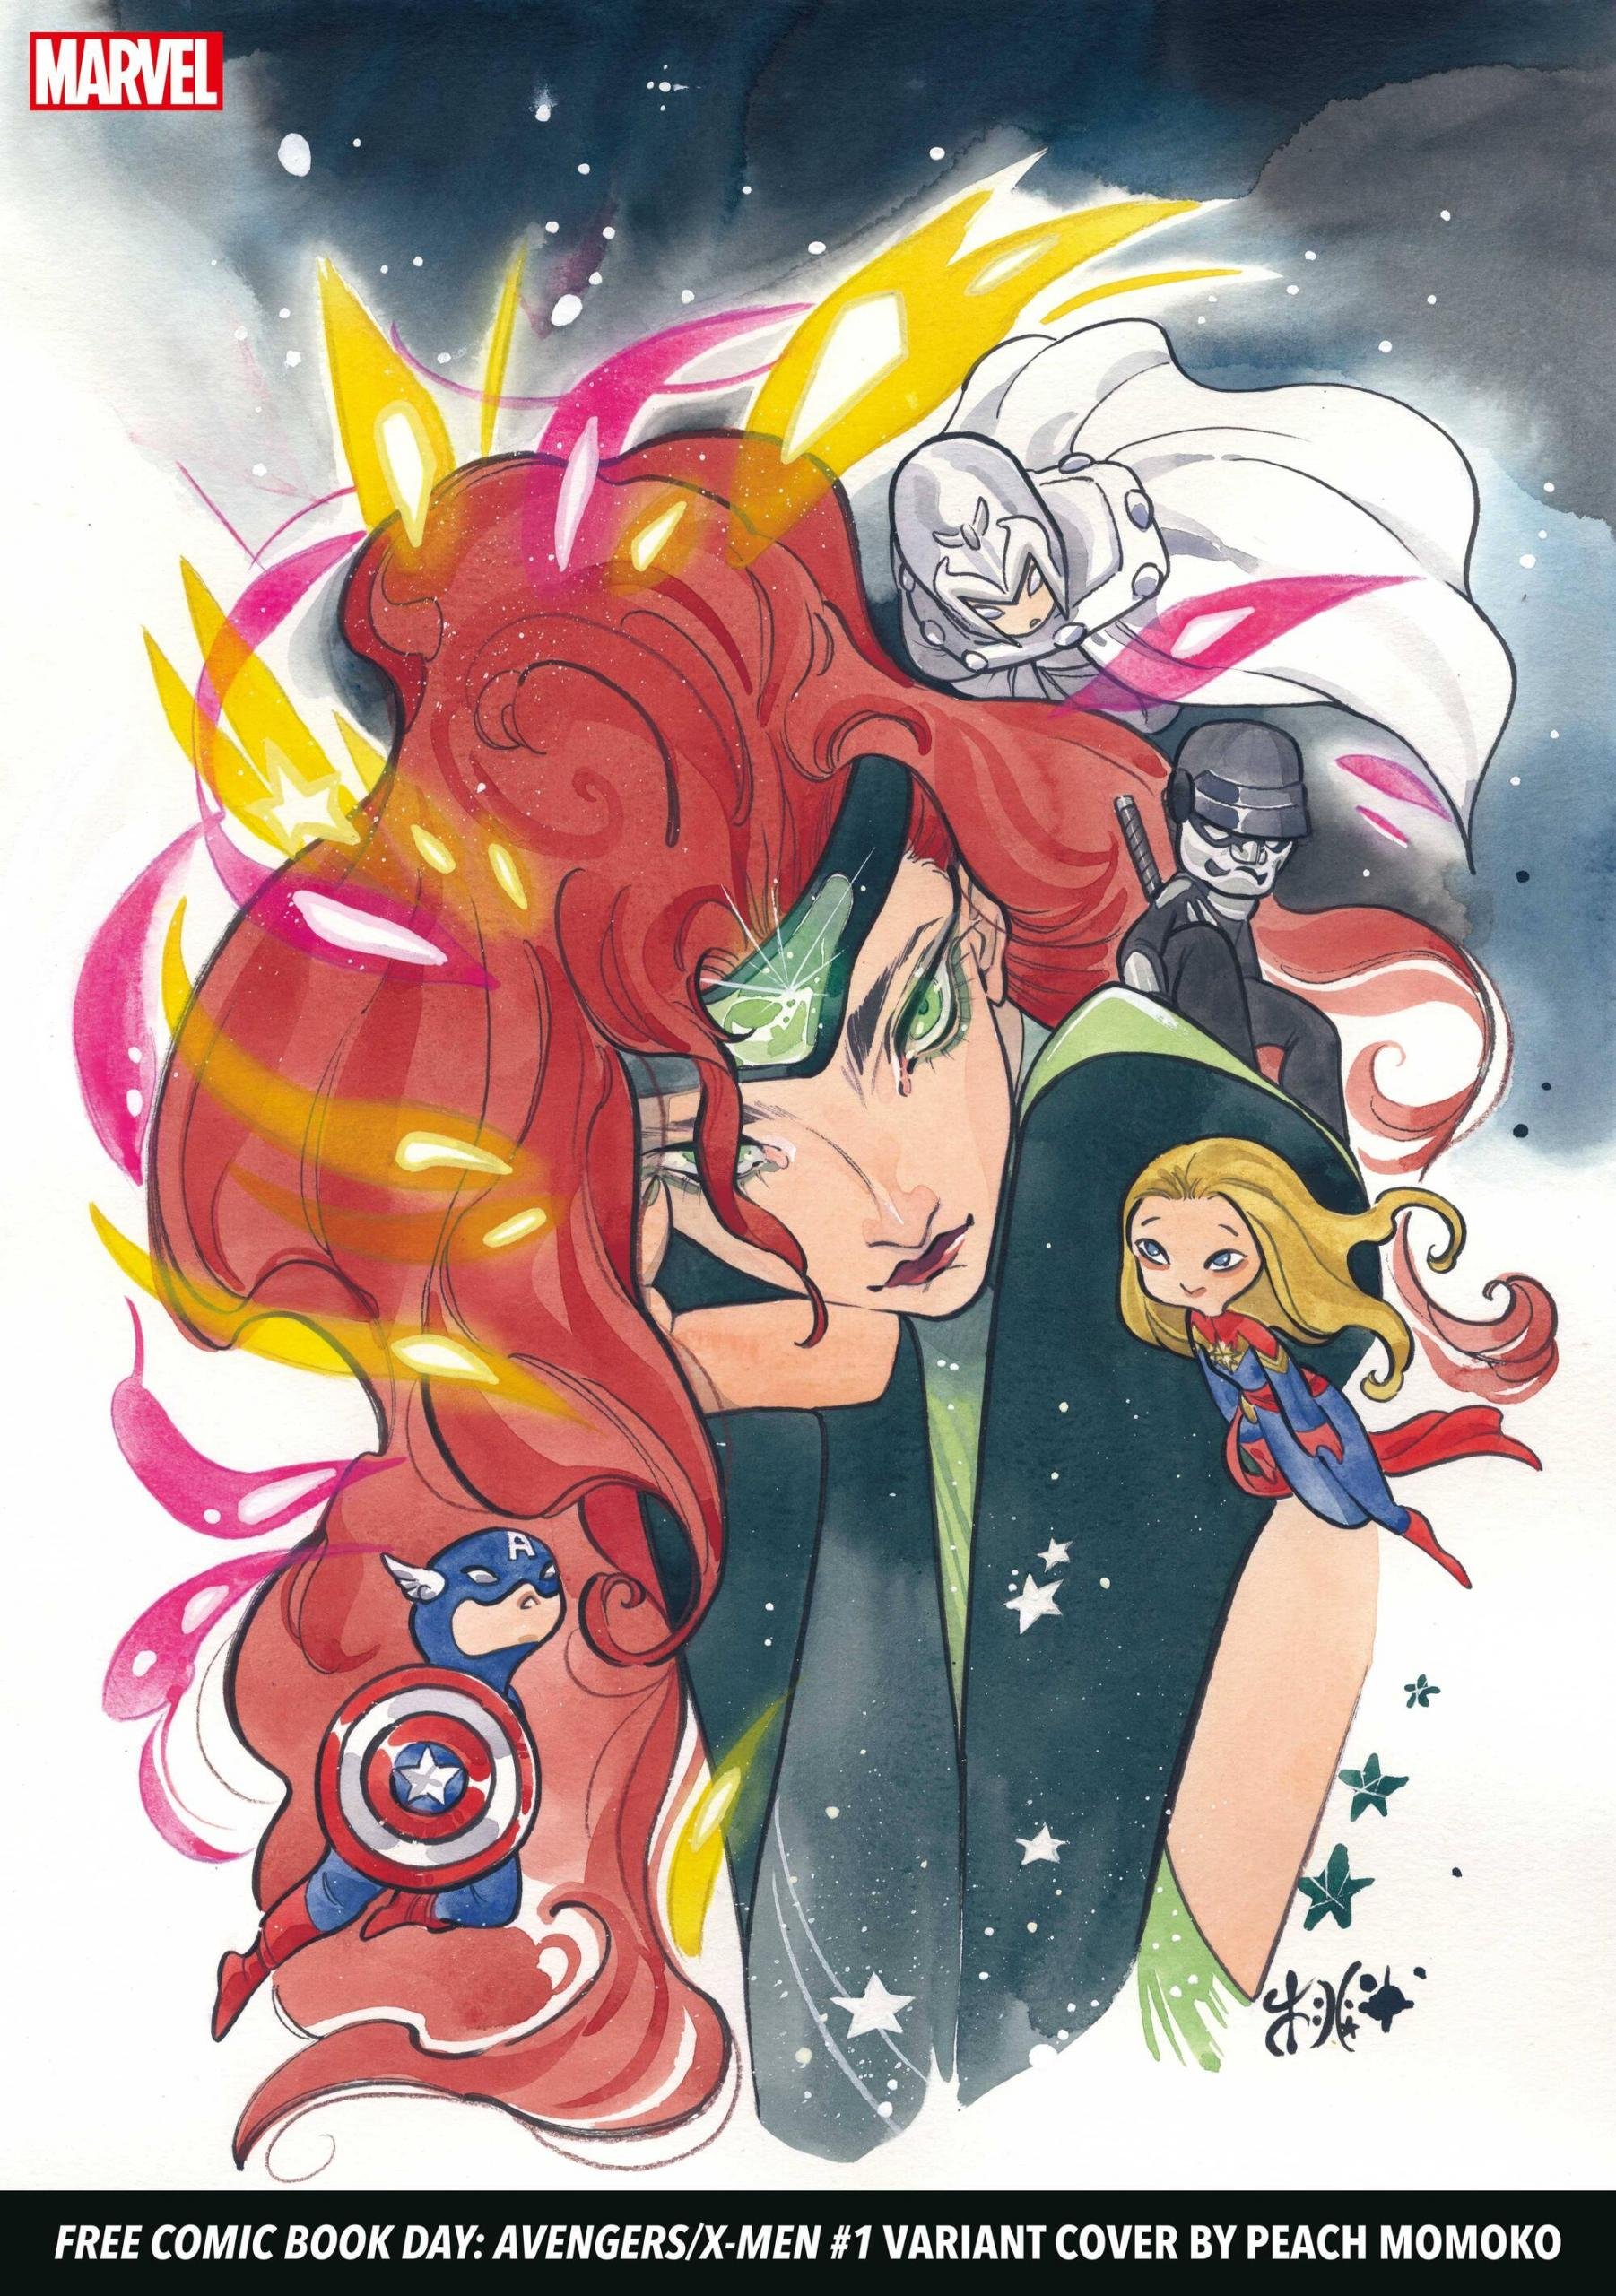 Variant Cover di Free Comic Book Day: Avengers/X-Men di Peach Momoko con i preludi a Judgment Day e Hellfire Gala